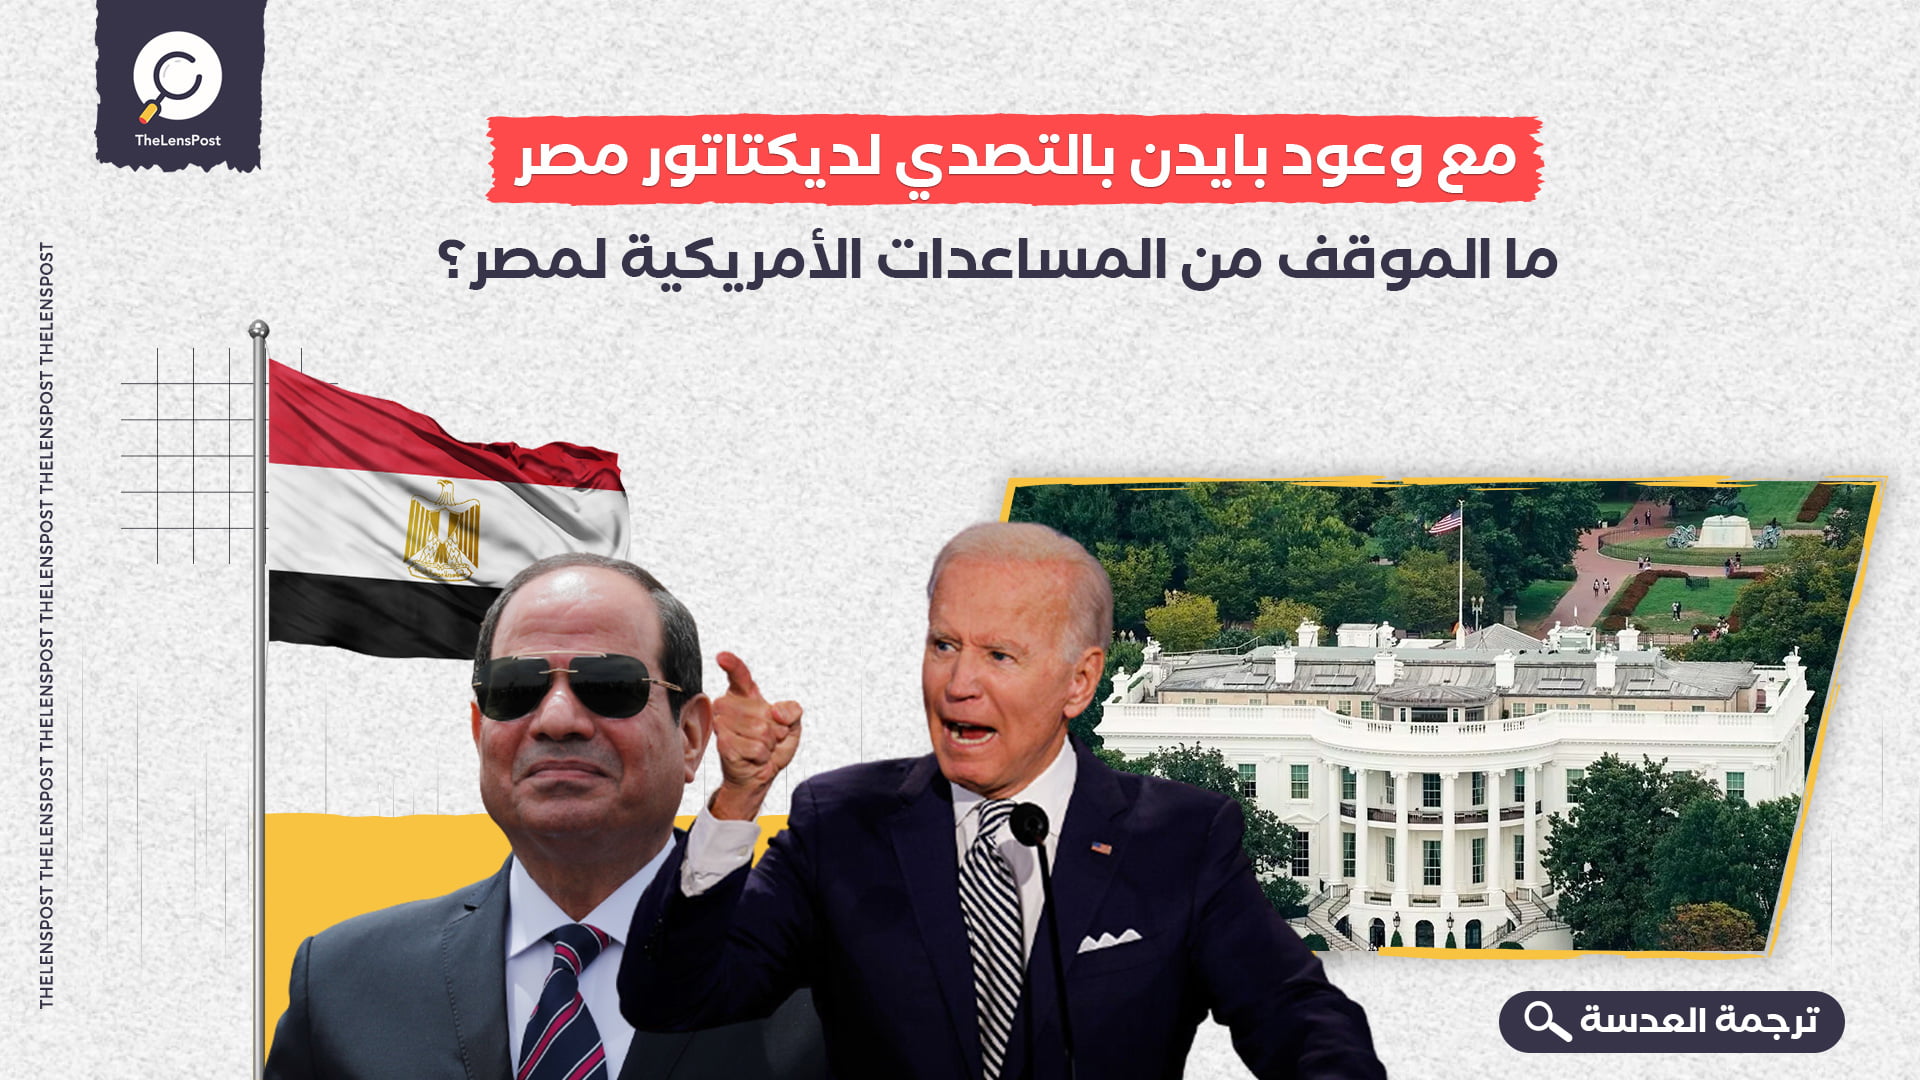 مع وعود بايدن بالتصدي لديكتاتور مصر... ما الموقف من المساعدات الأمريكية لمصر؟